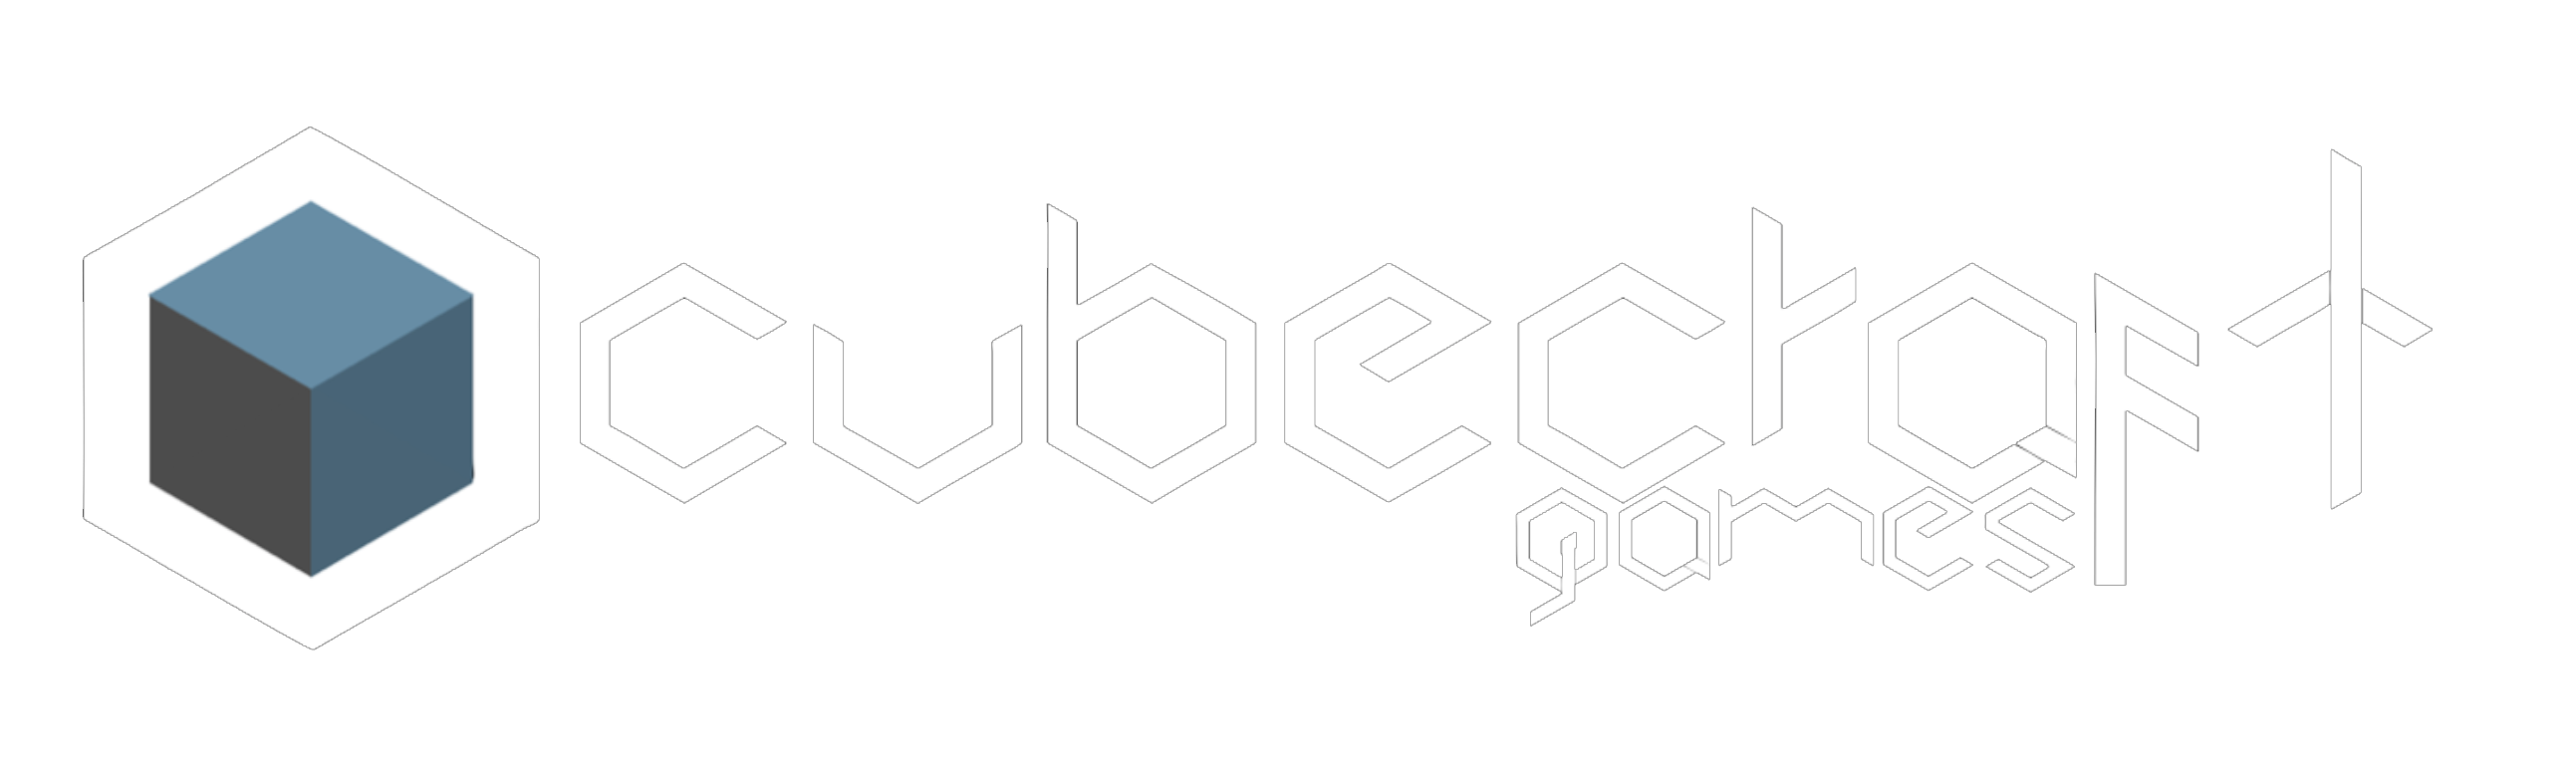 cubecraft_logo_mock_1.png